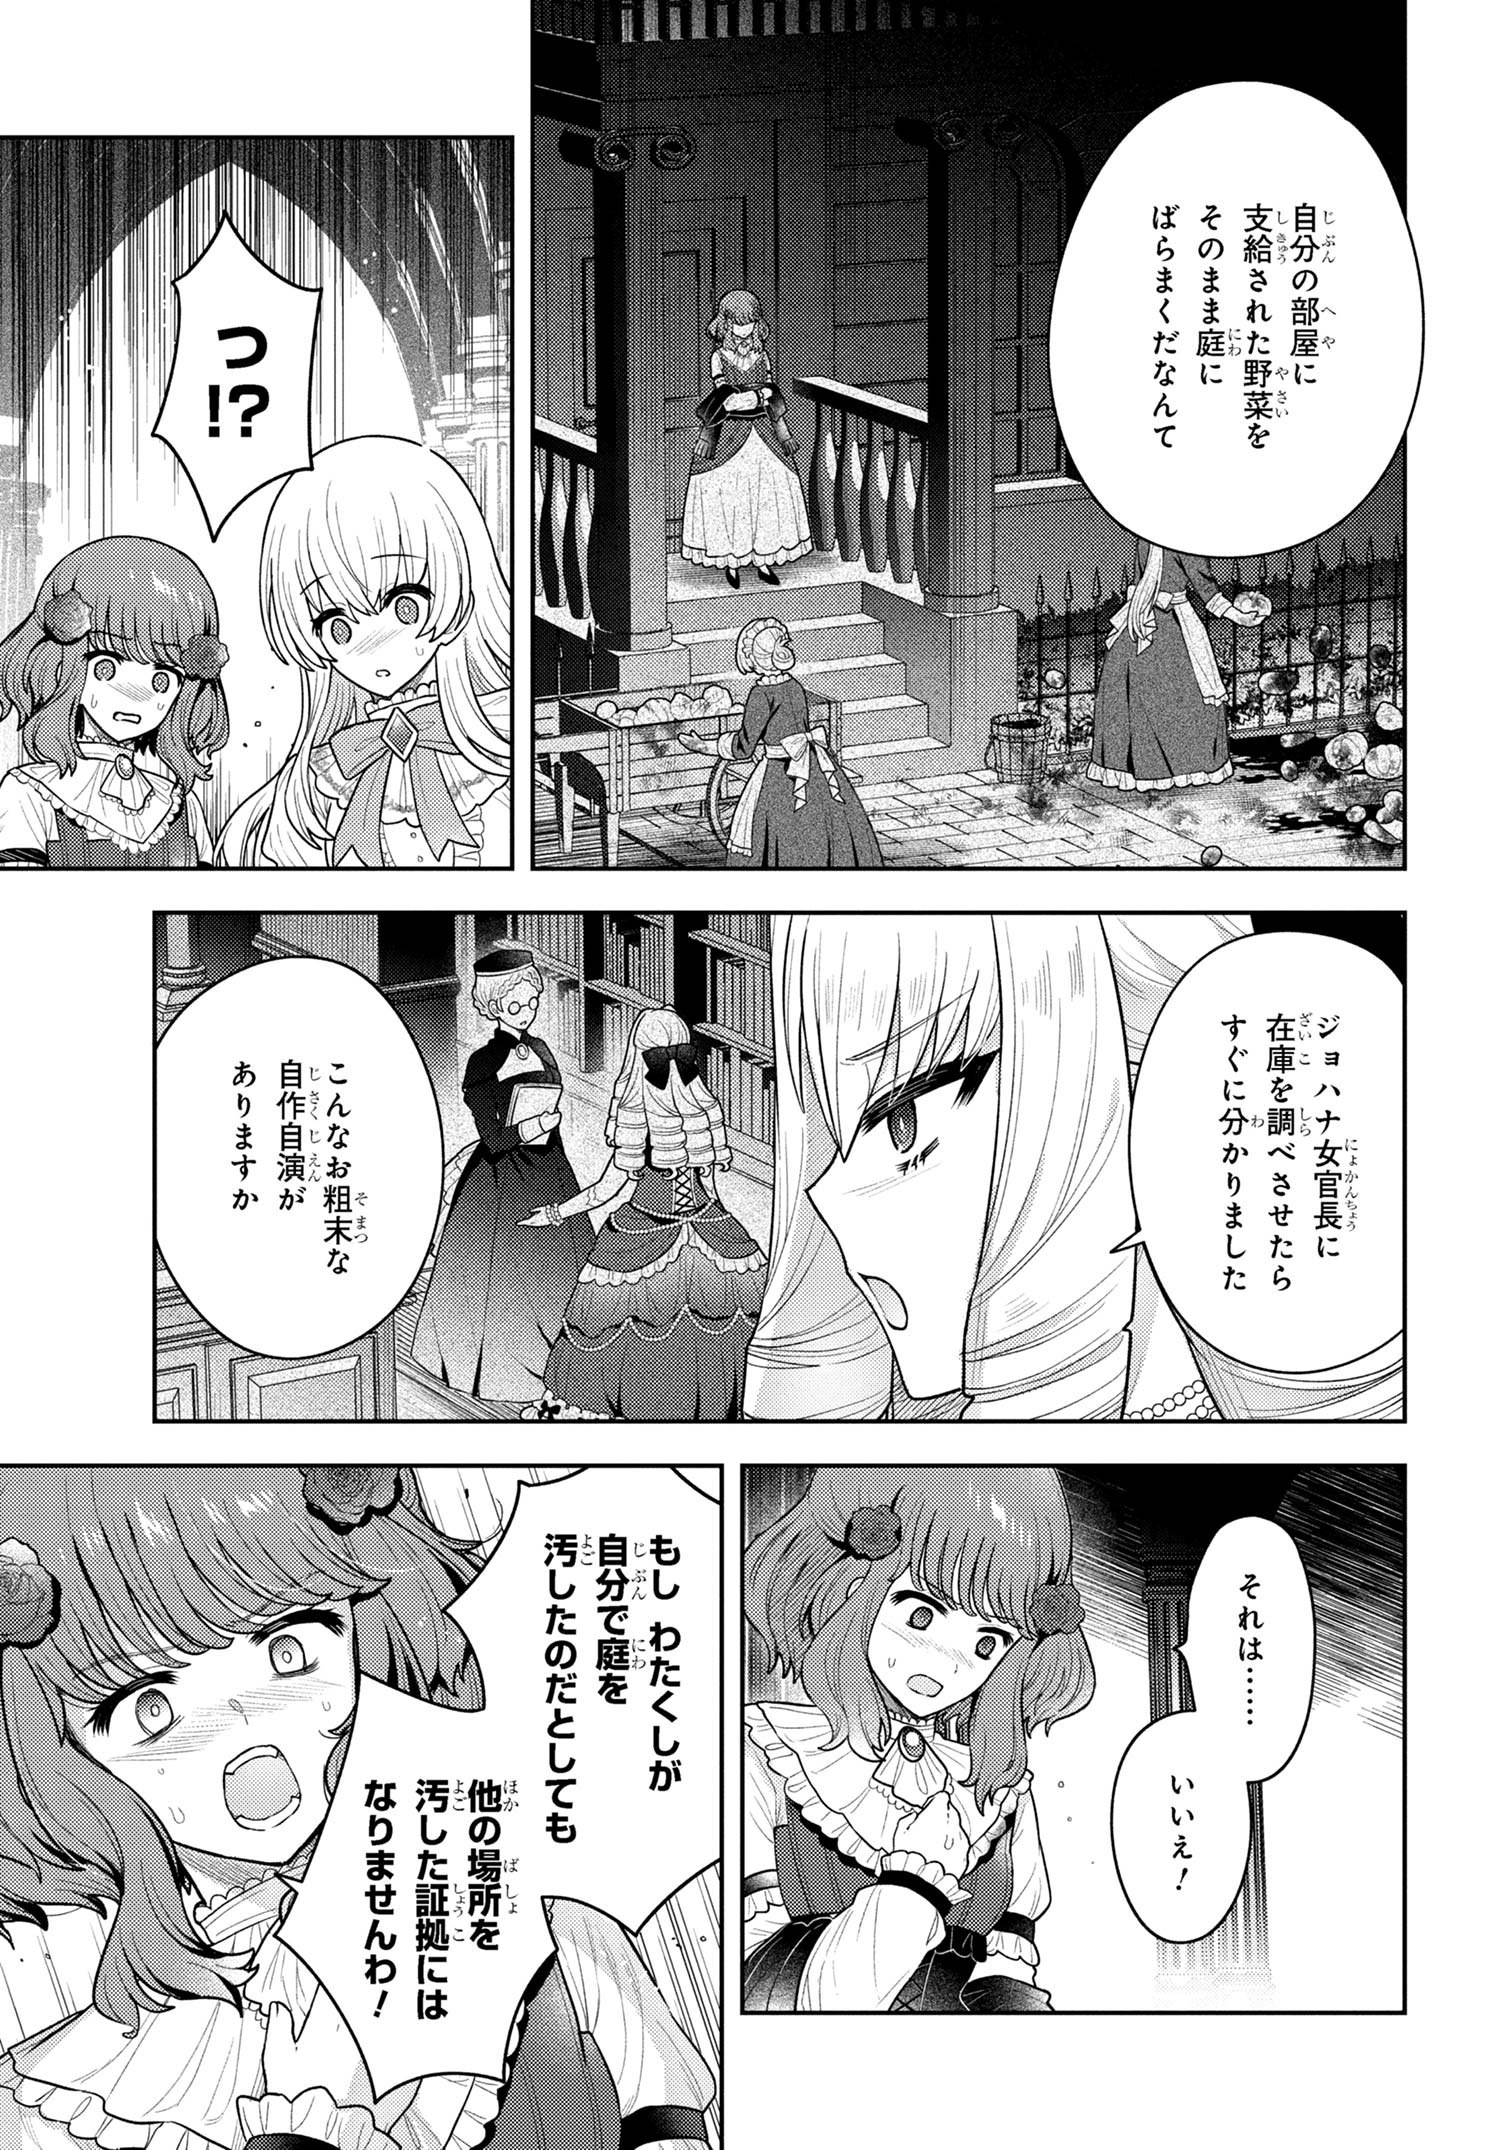 Motosister Reijo no Migawari Ohi Koho Seikatsu Kamisama ni Bureina Hito wa Kono Watashi ga Yurushimasen - Chapter 9.1 - Page 9